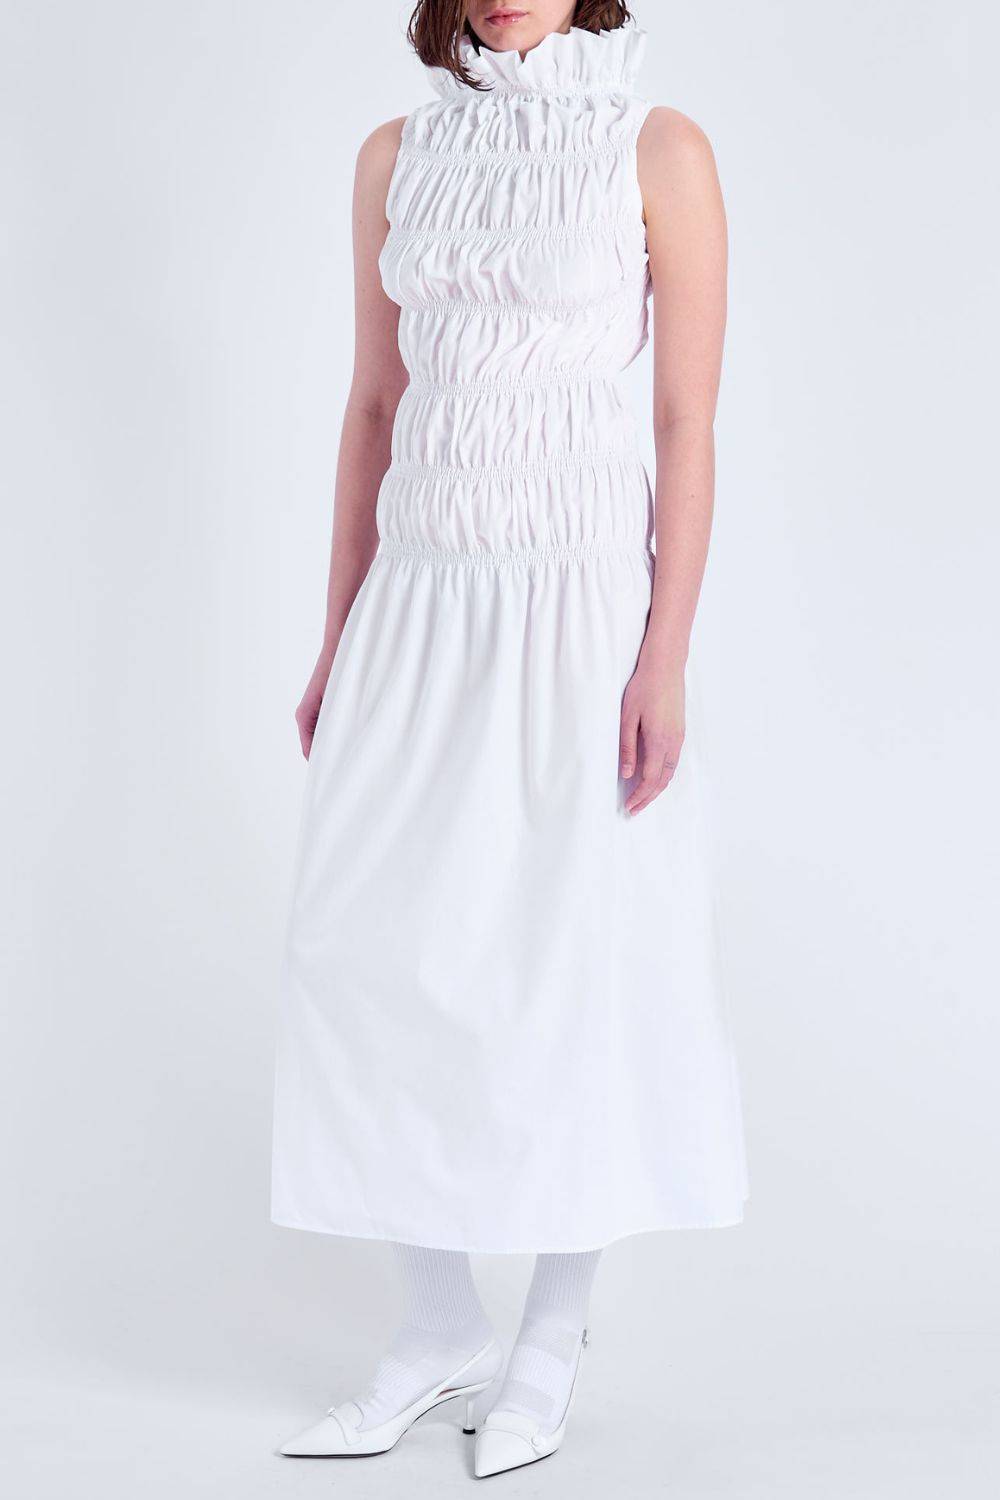 Biała sukienka z marszczoną talią, Acephala, 890 zł (Fot. materiały prasowe)